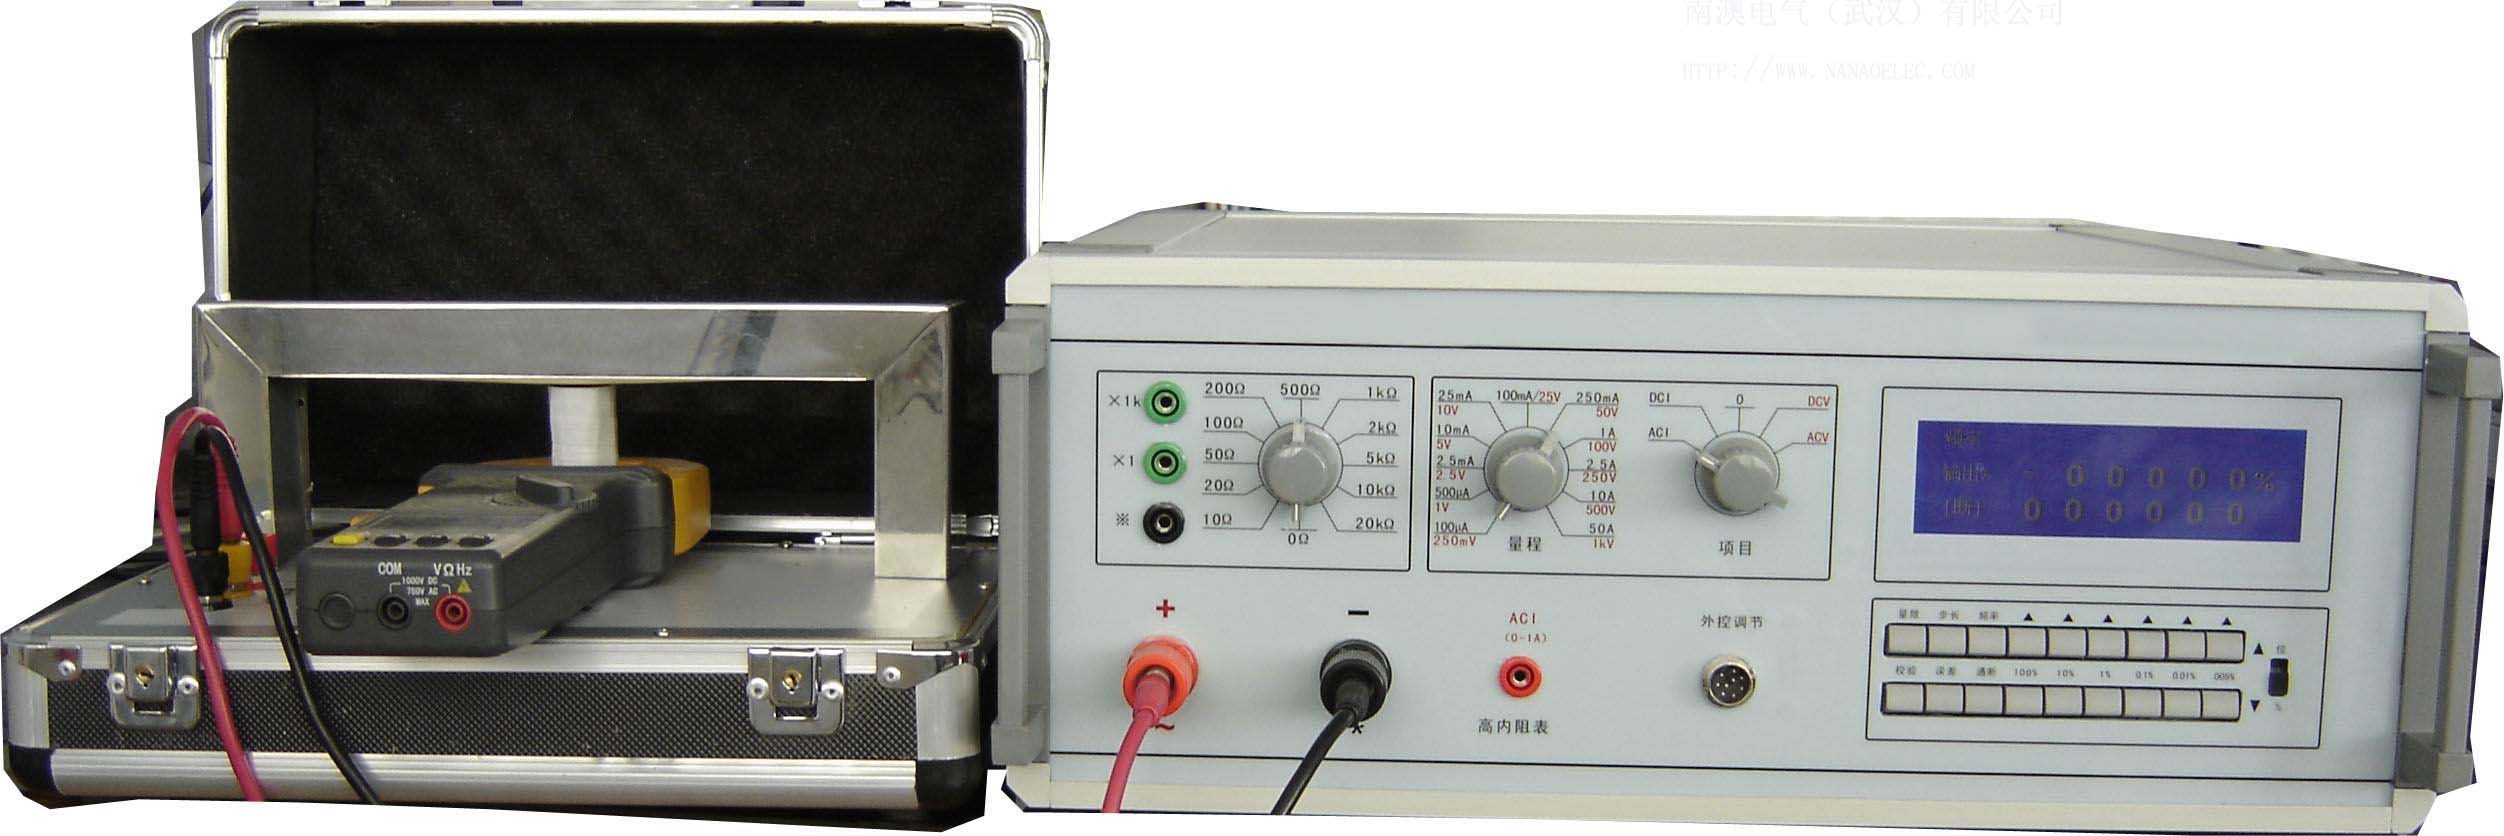 NAVJY全自动一体电压电流源交直流电压电流标准源